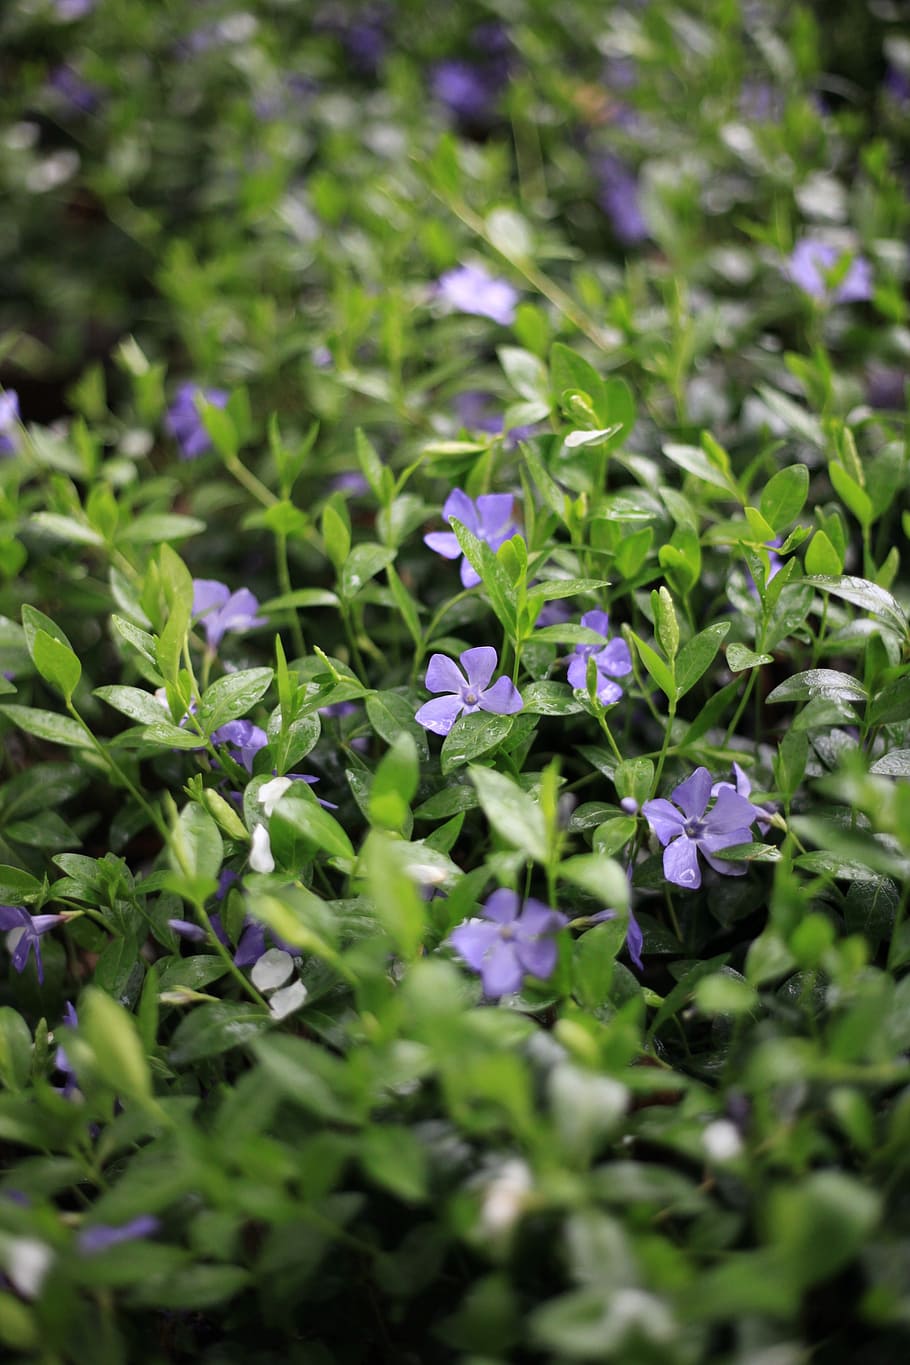 ツルニチニチソウ, ハーブ, 紫, 緑の背景, 5枚の花弁, 春, 自然, 花, 開花植物, 植物